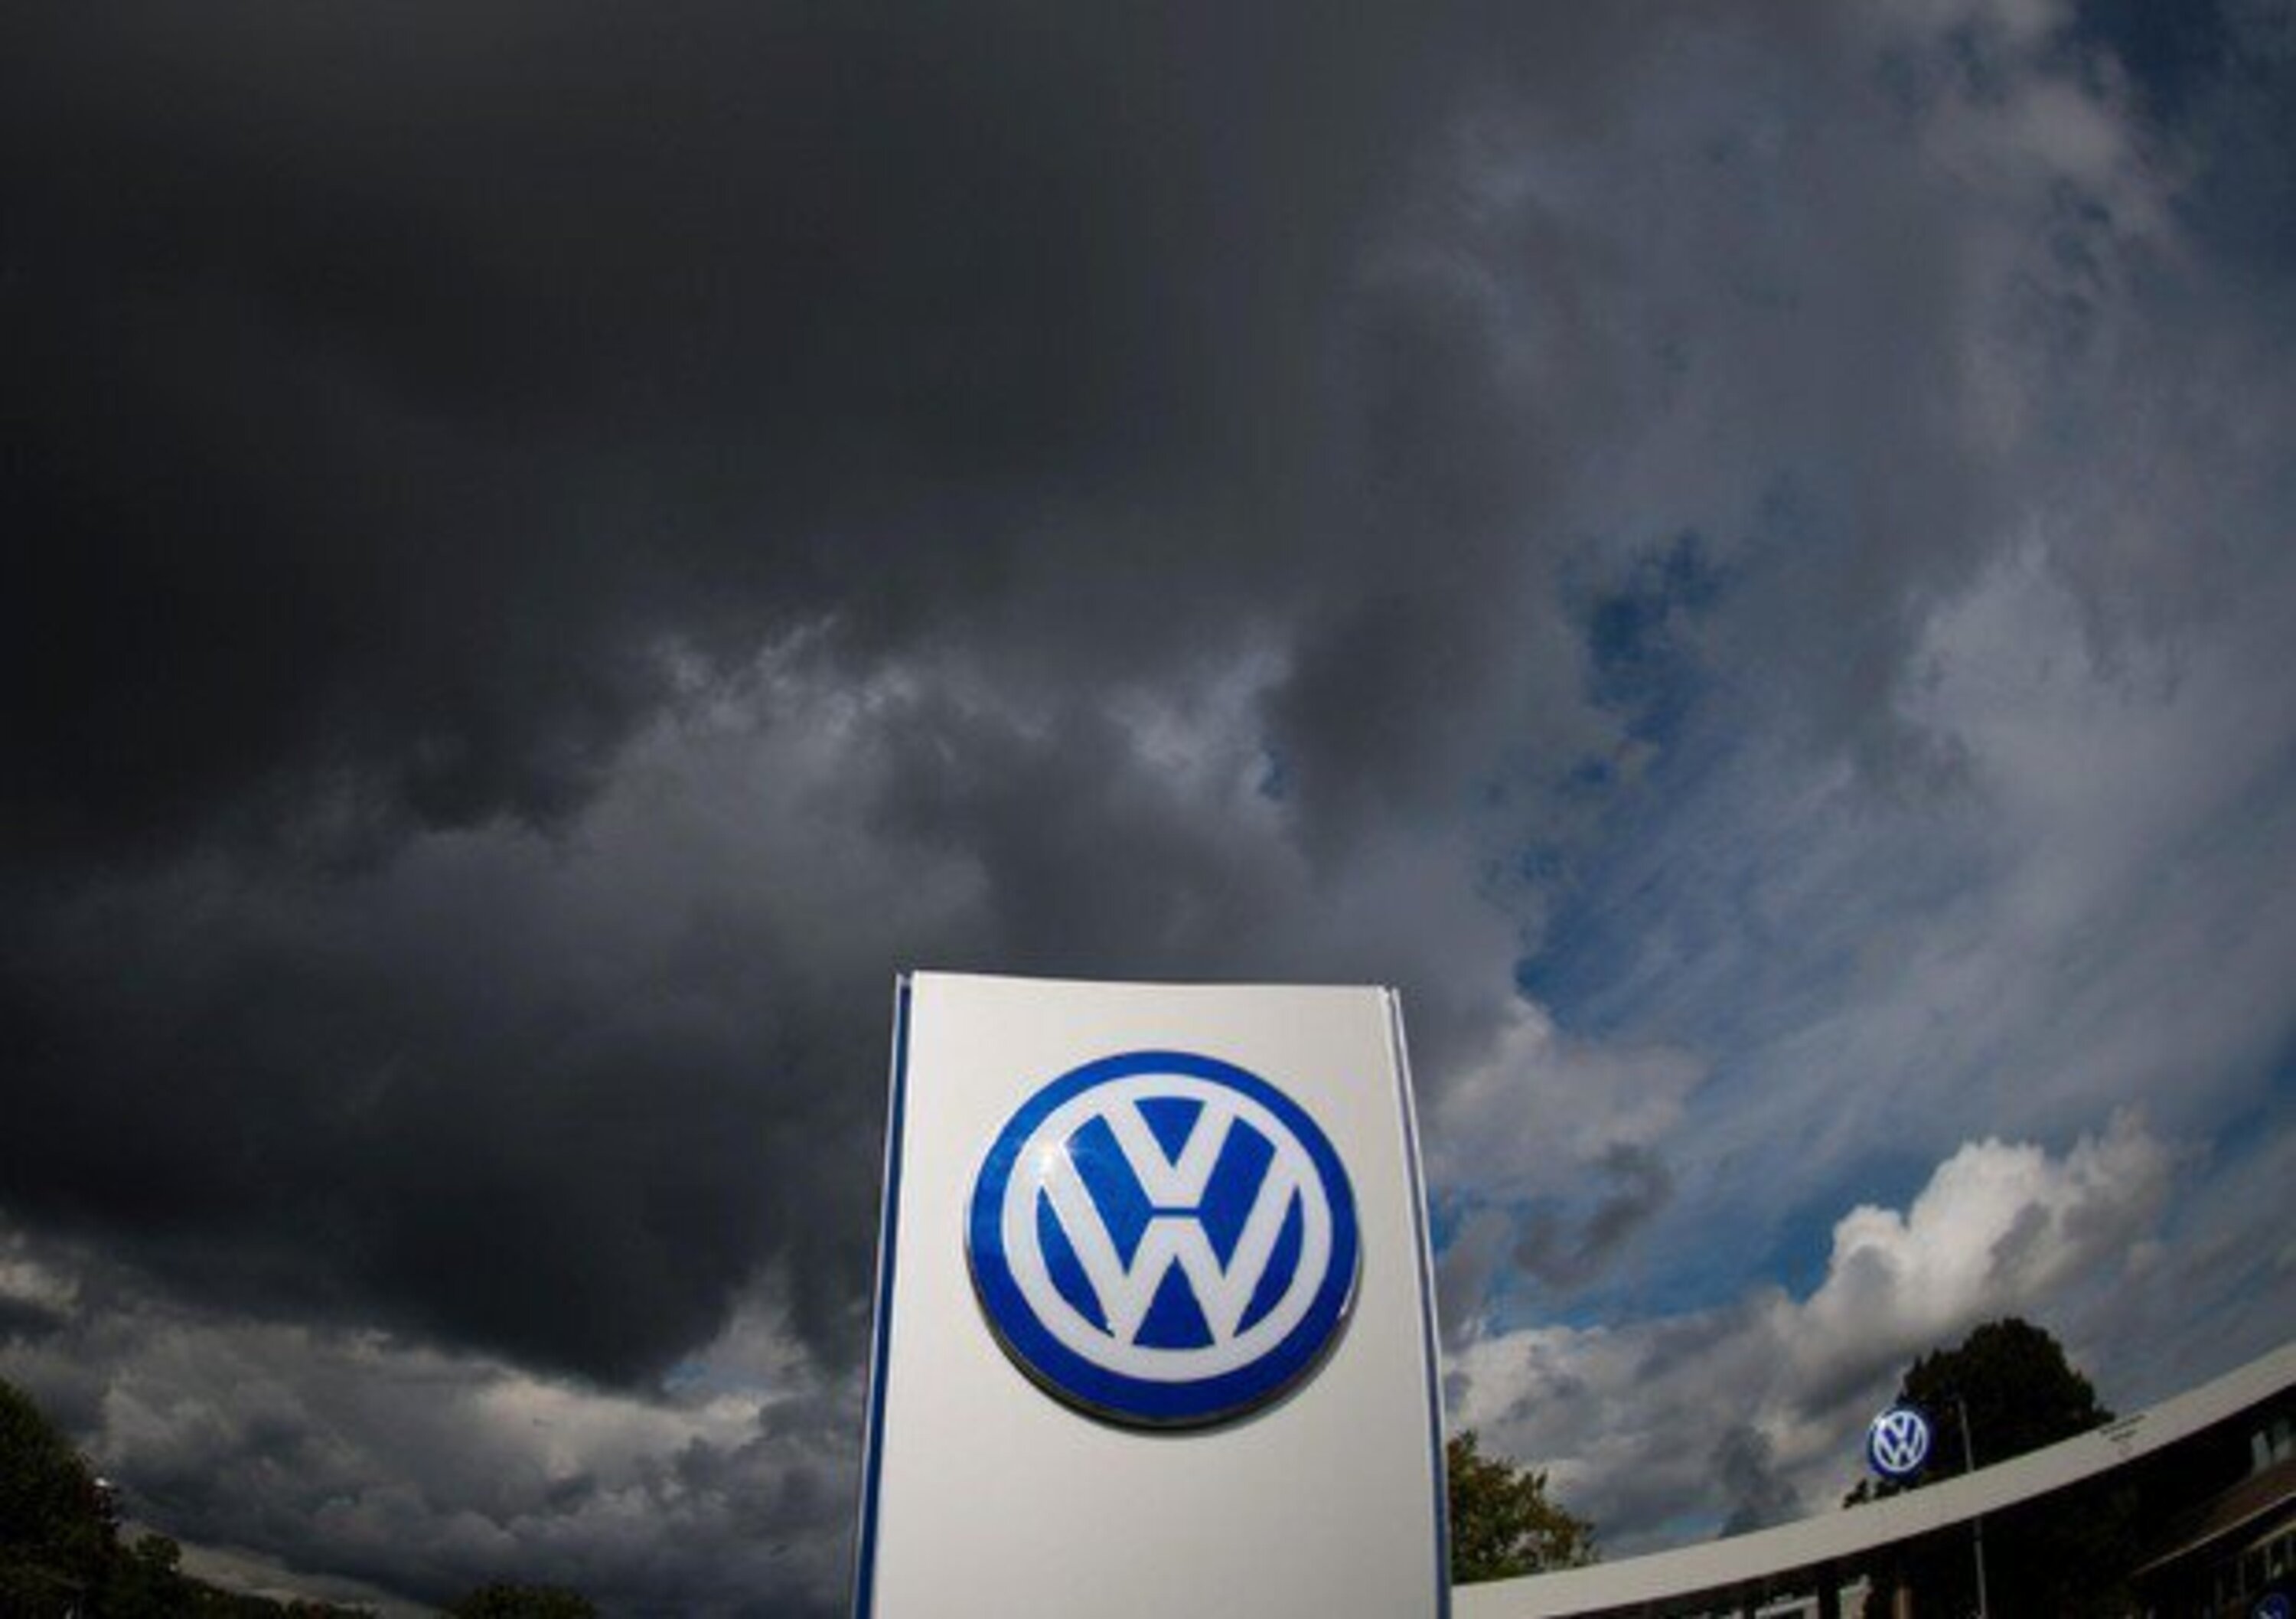 Caso fornitori, VW avrebbe corrisposto 13 milioni di euro a Prevent